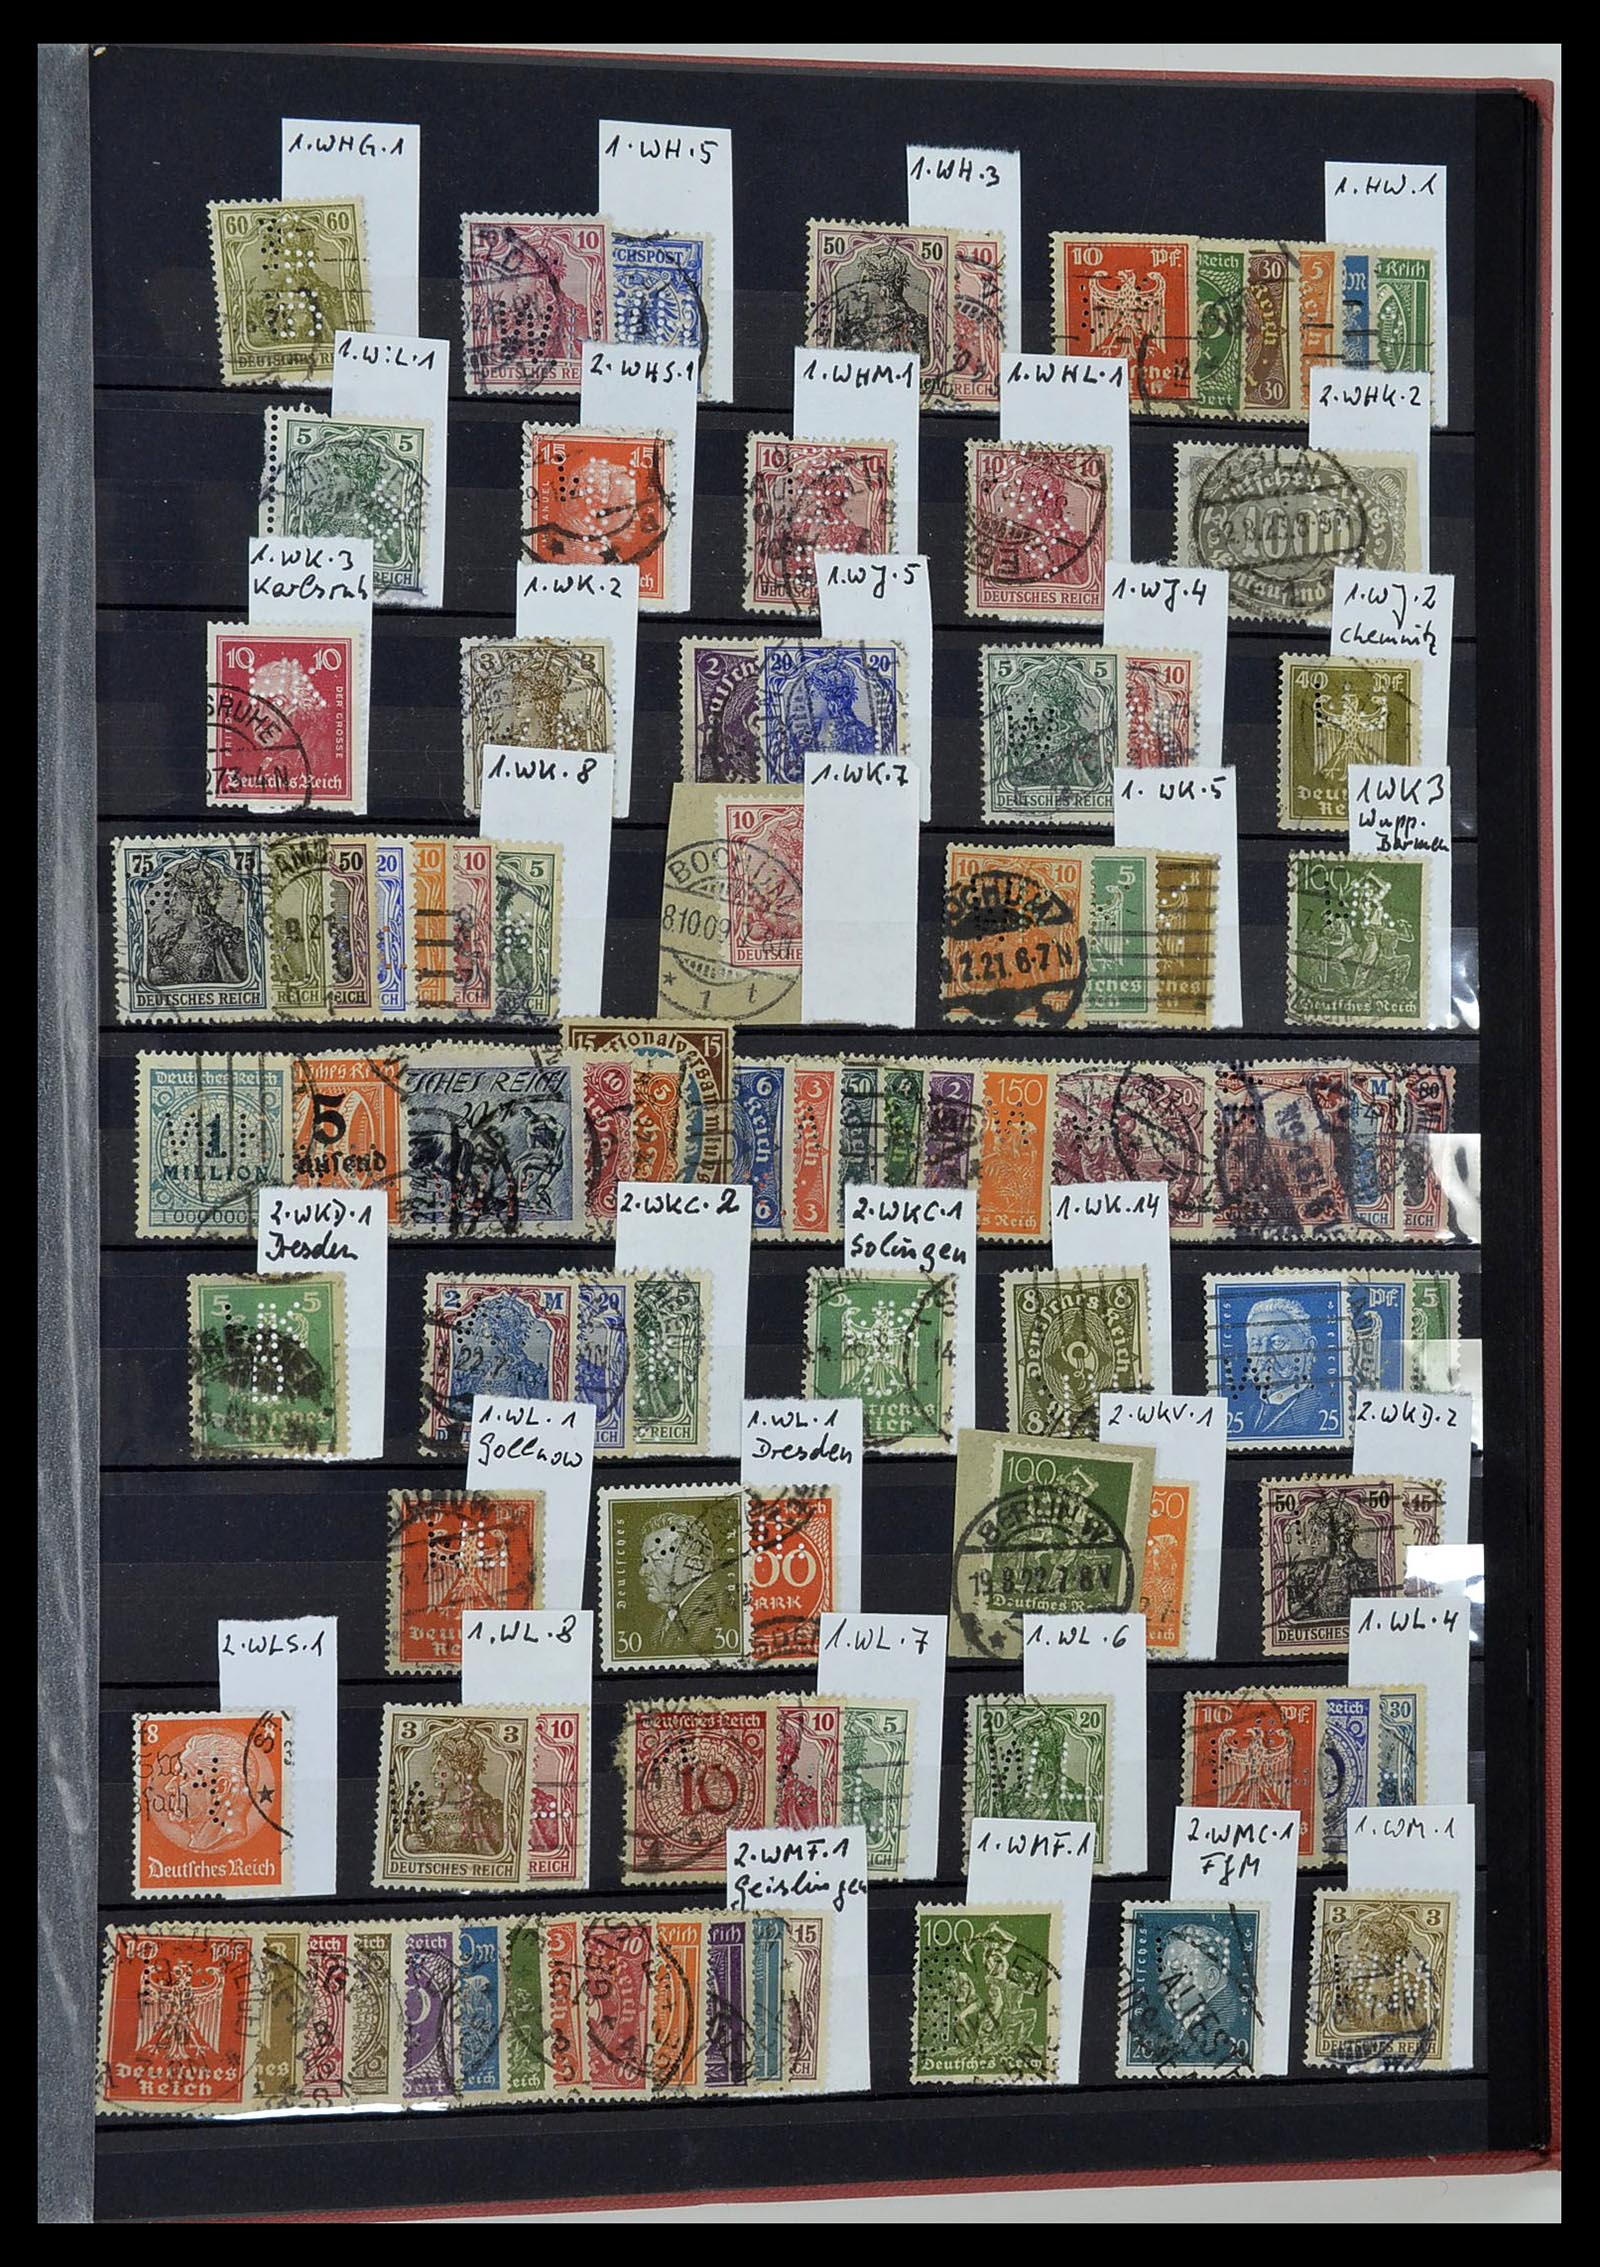 34432 053 - Stamp Collection 34432 German Reich perfins 1900-1933.